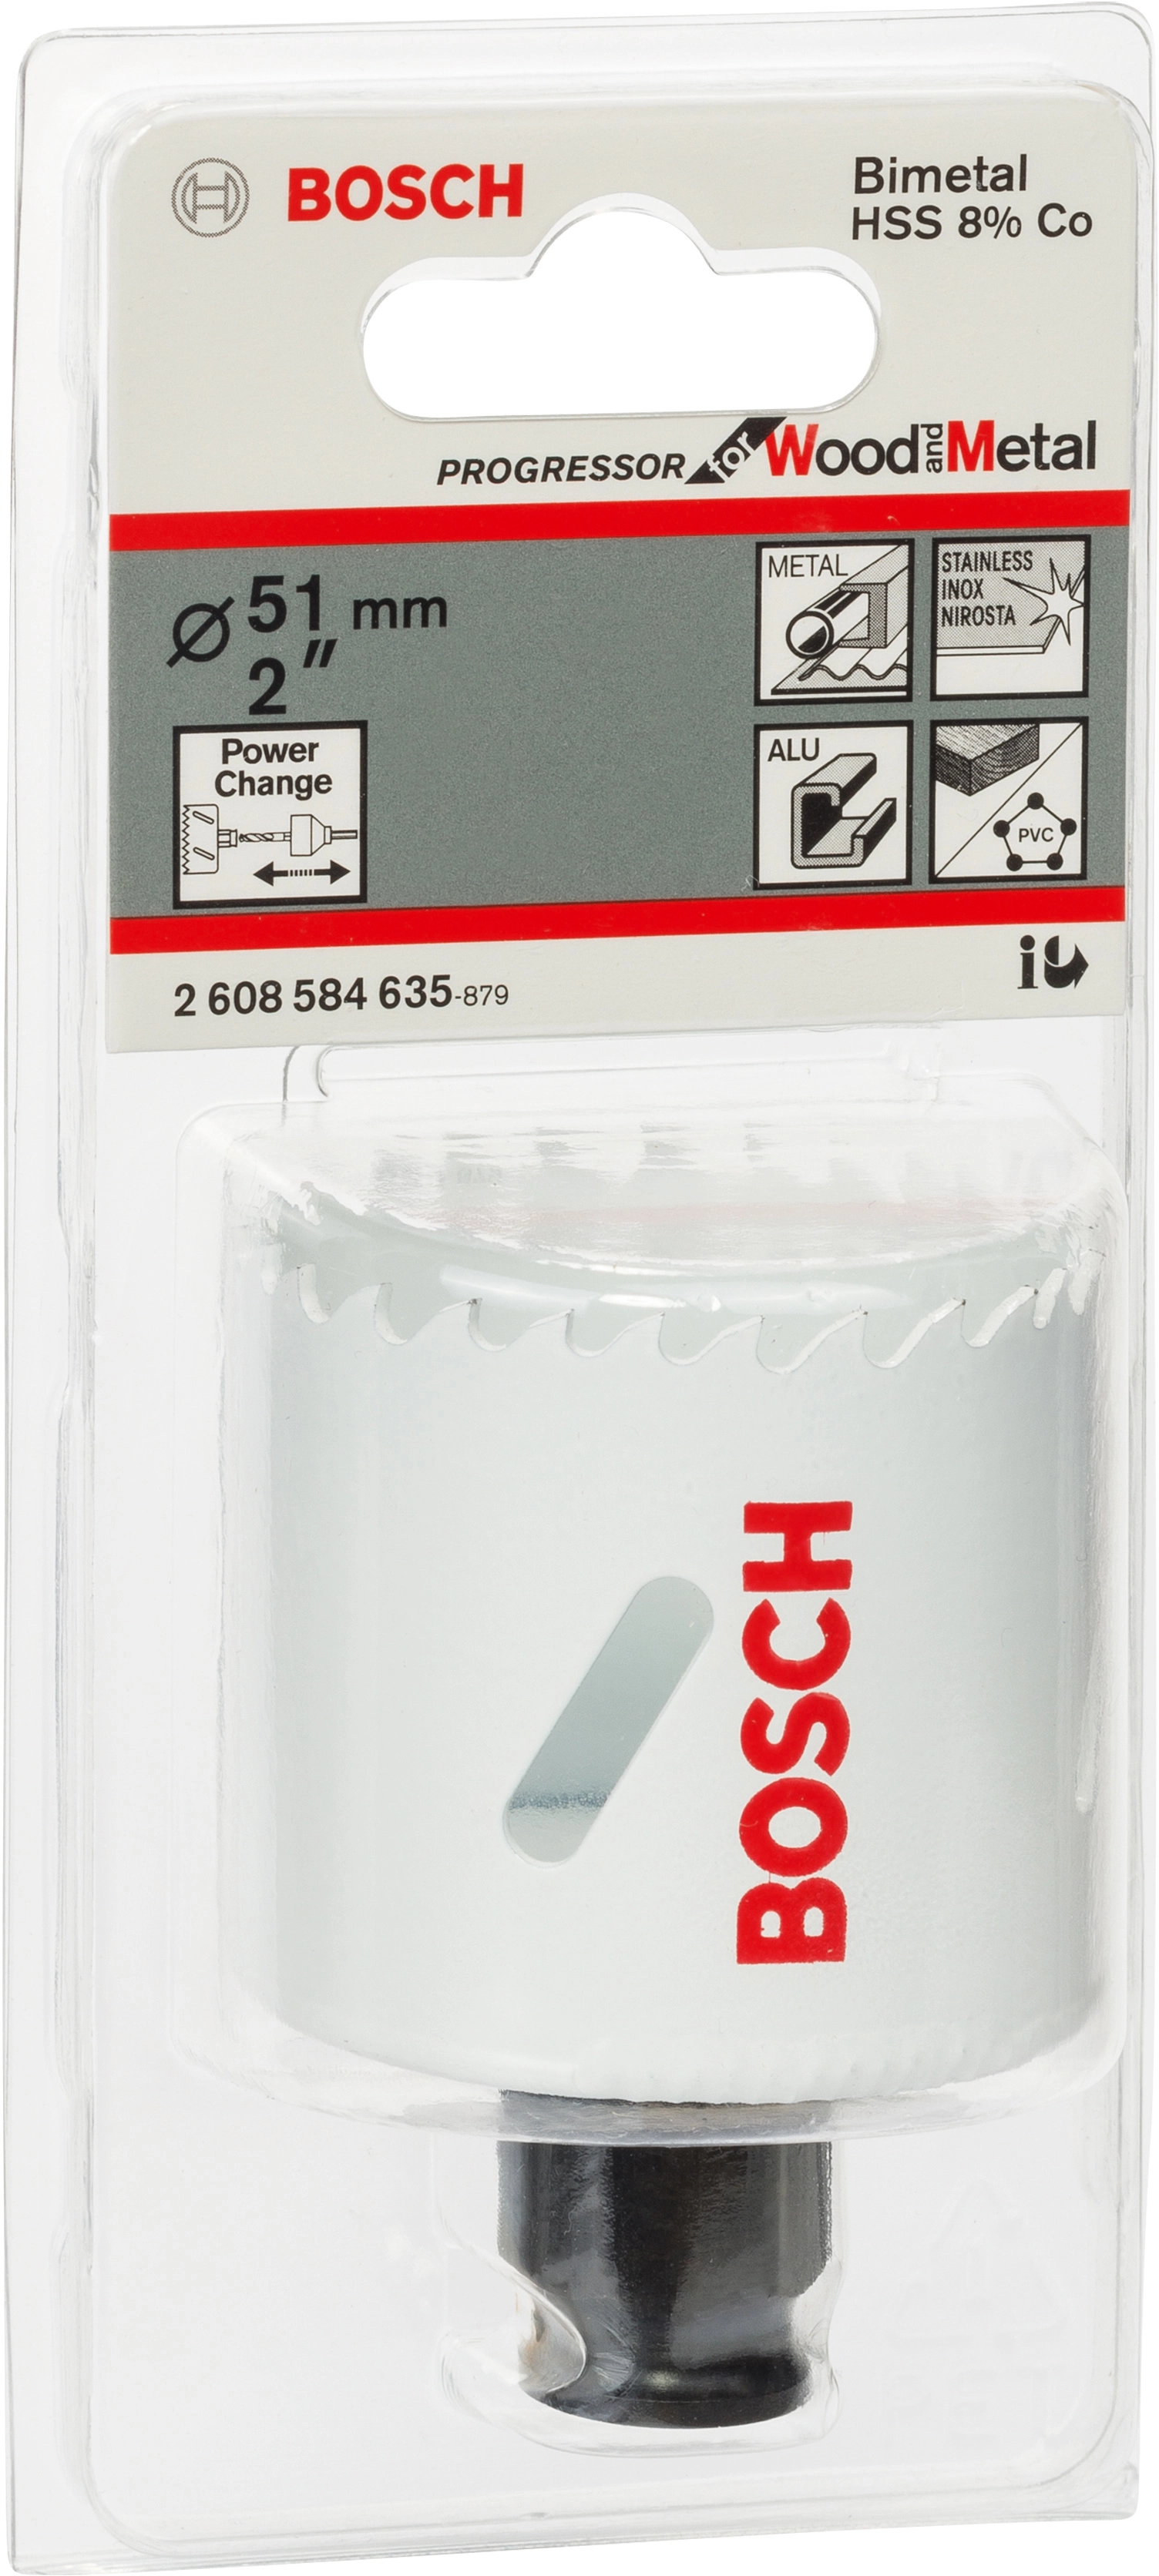 Bosch Lochsäge Pro Progressor for Metal 51 Ø bei Wood OBI mm kaufen and